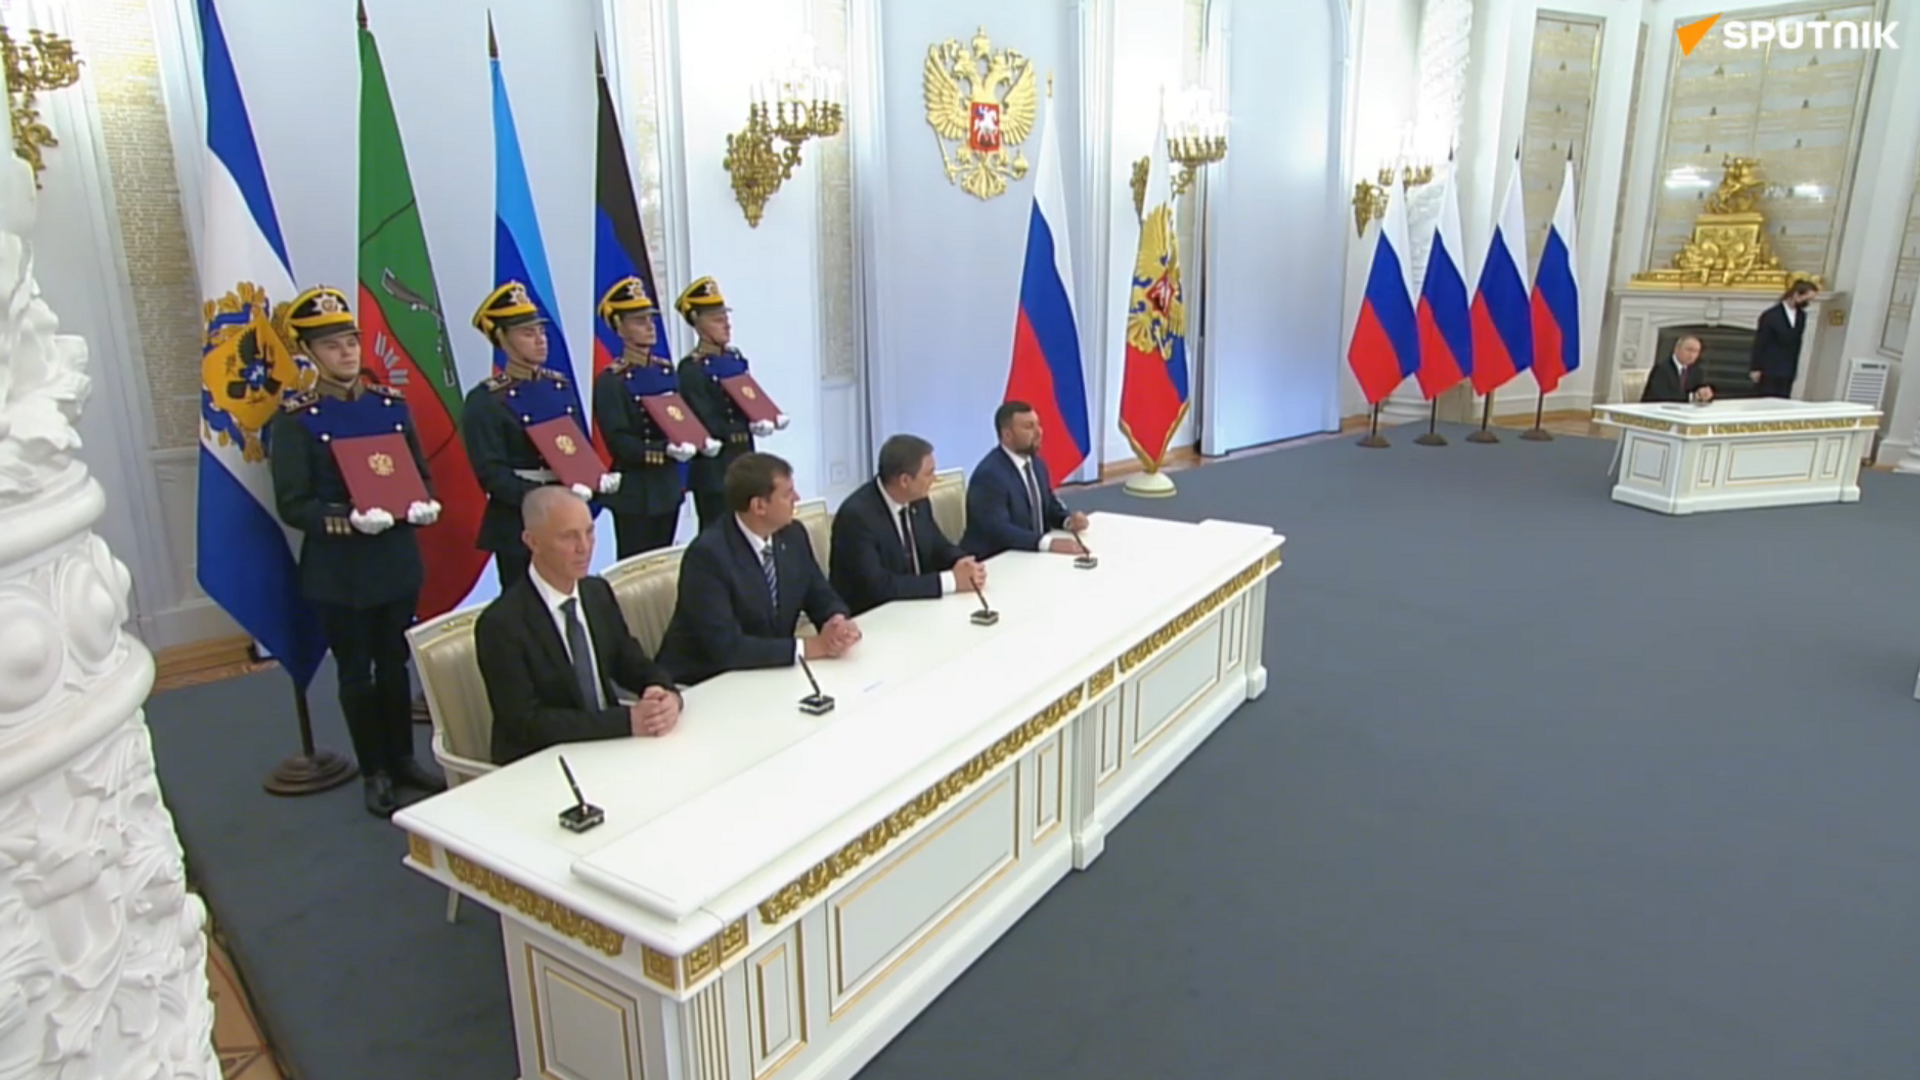 Договор между украиной и россией 2022. Церемония подписания соглашения. Зал переговоров в Кремле. Подписание соглашений в Кремле.